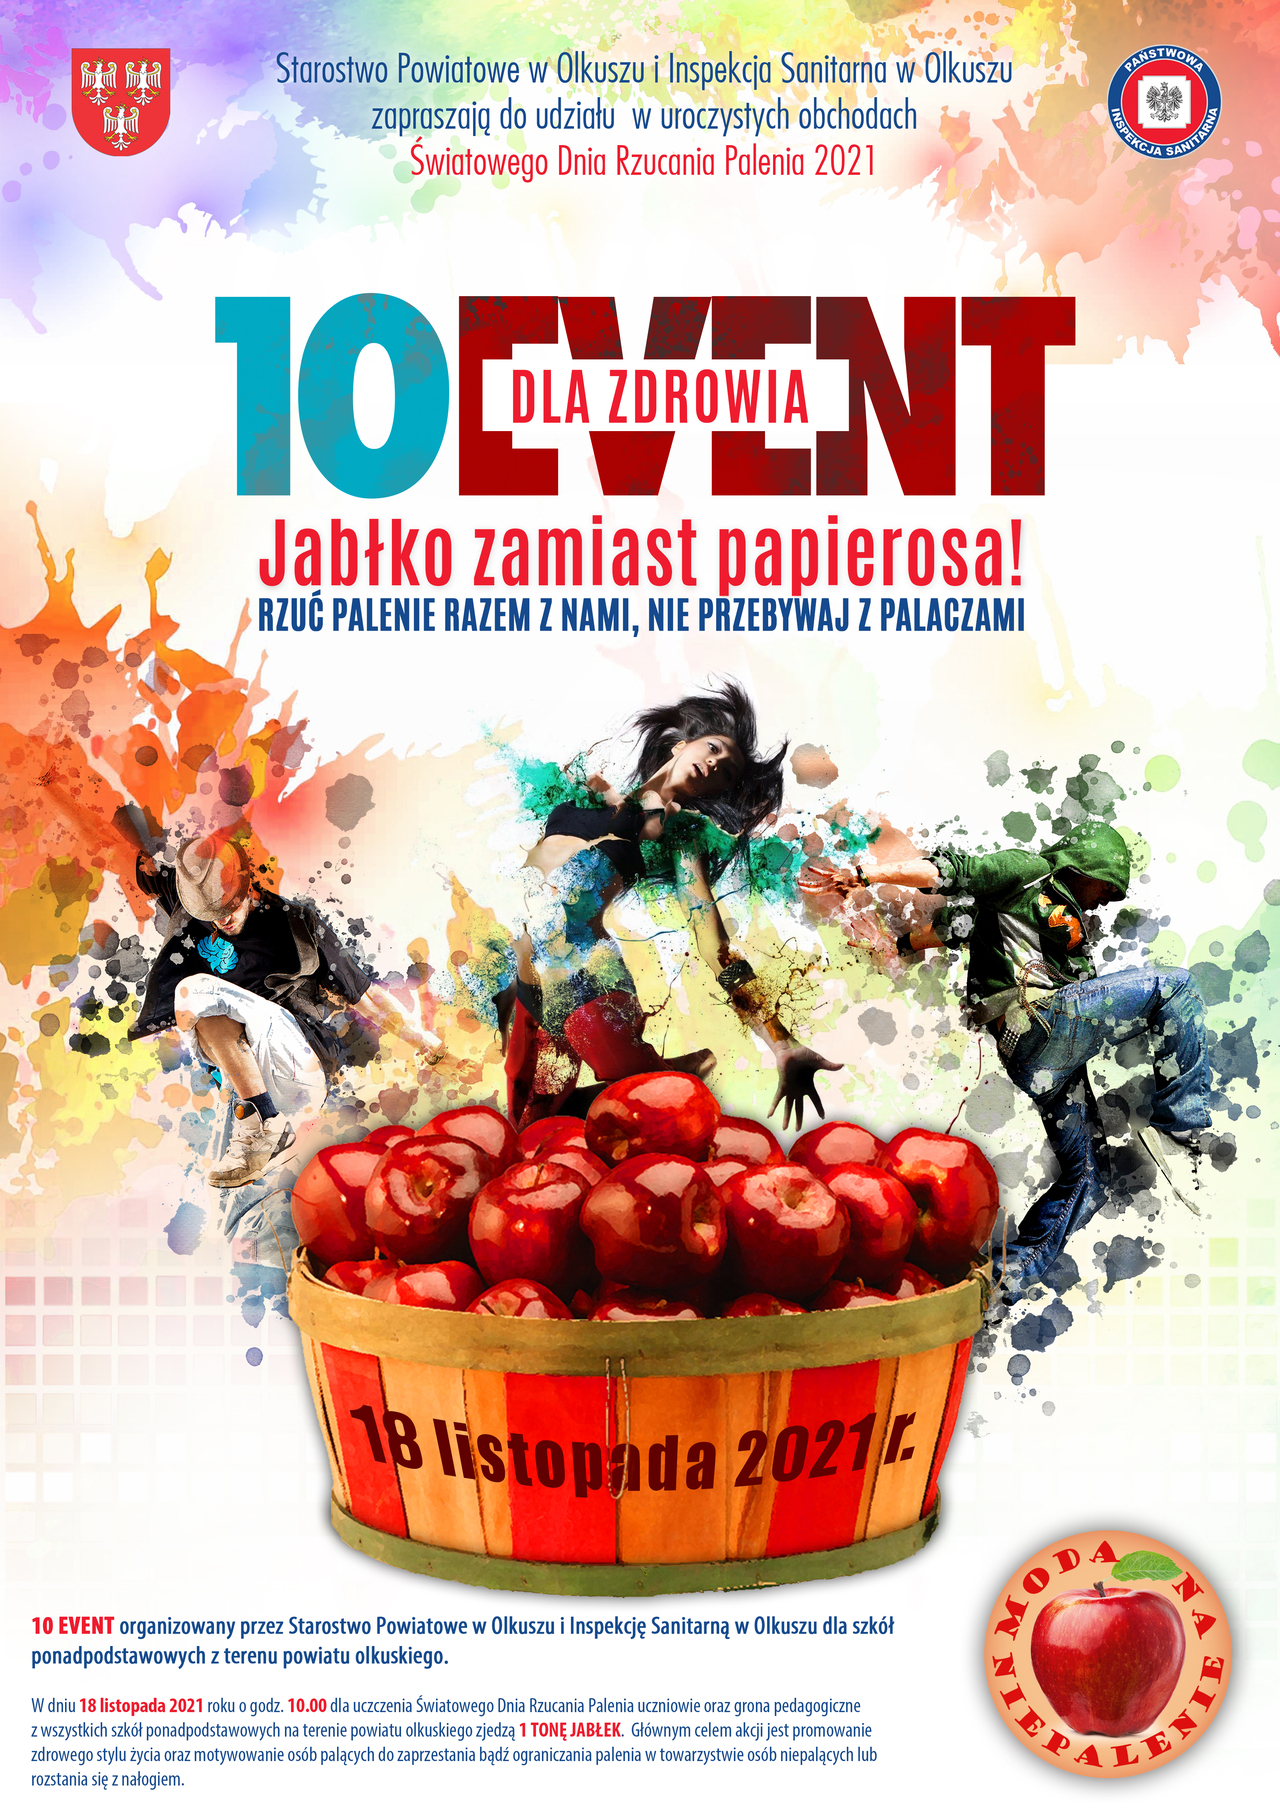 Plakat informujący o akcji 10EVENT dla zdrowia Jabłko zamiast Papierosa